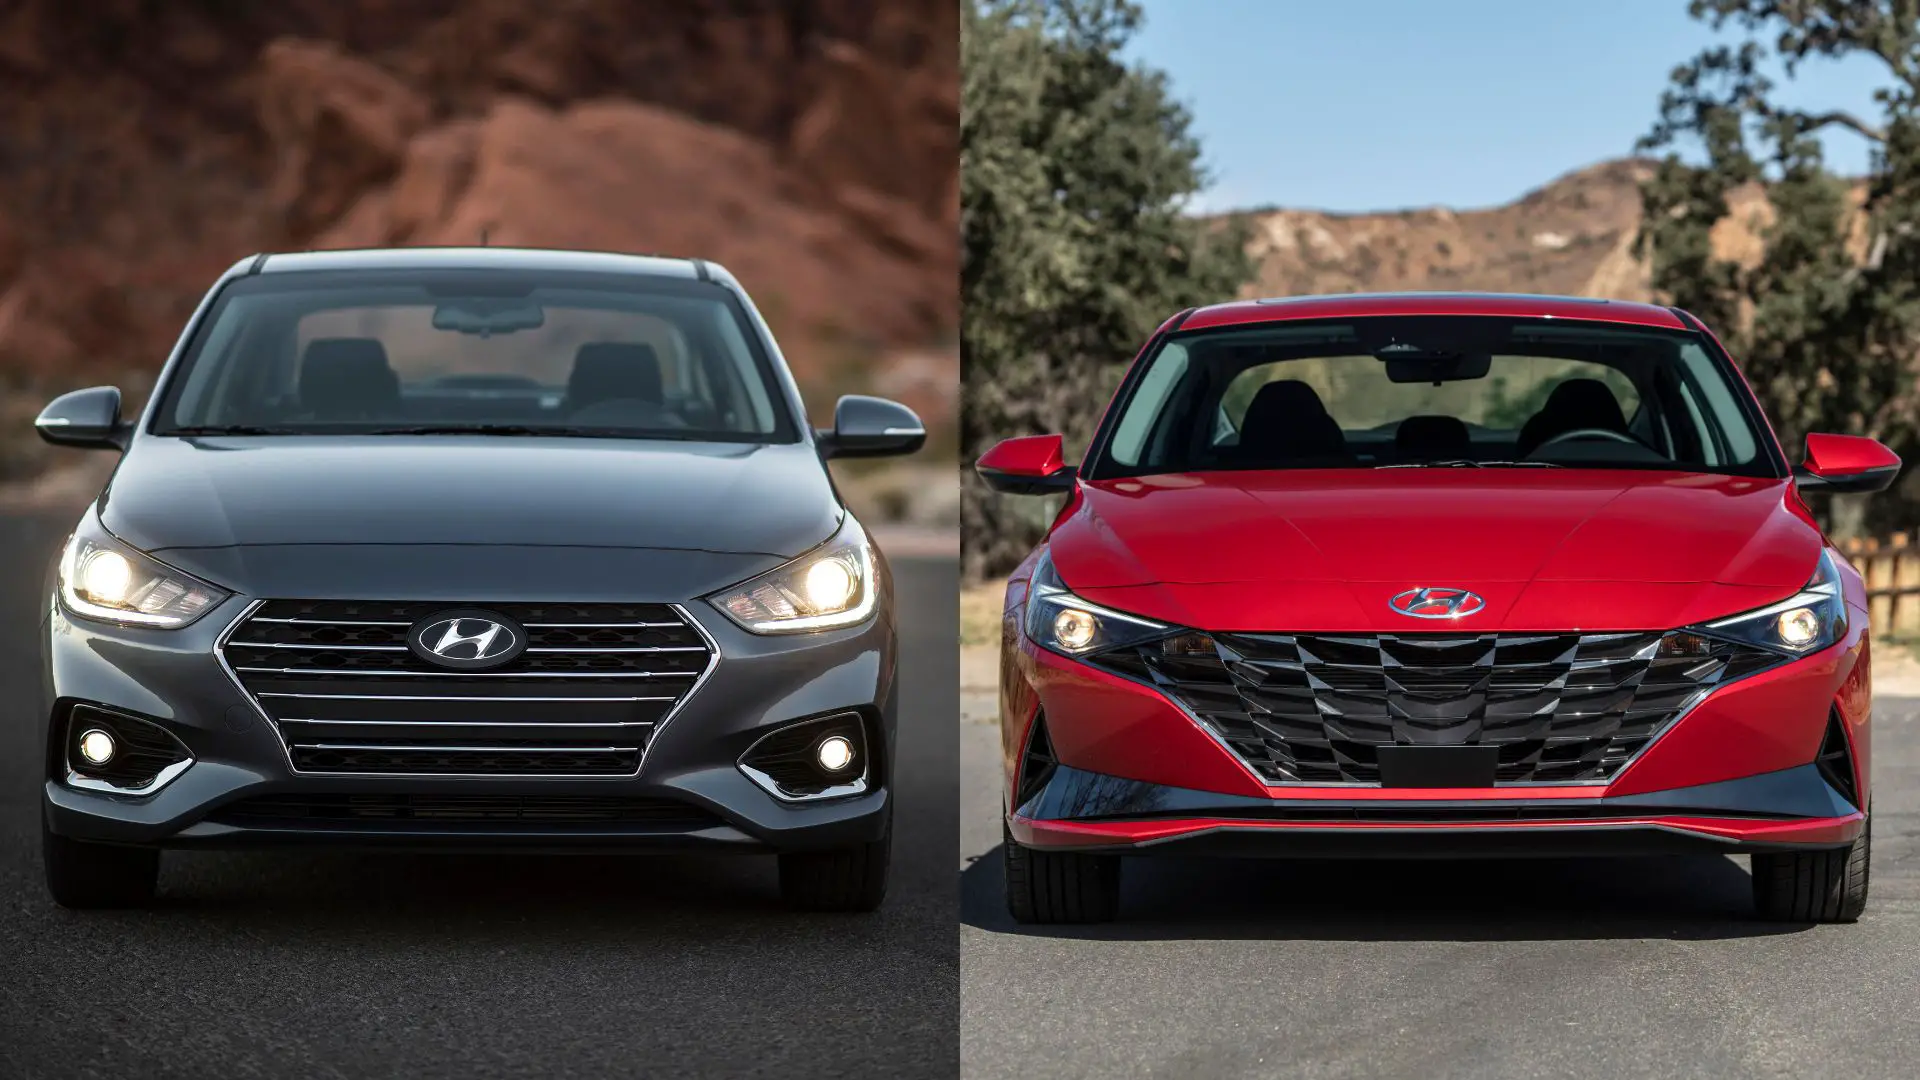 Hyundai Accent vs Elantra